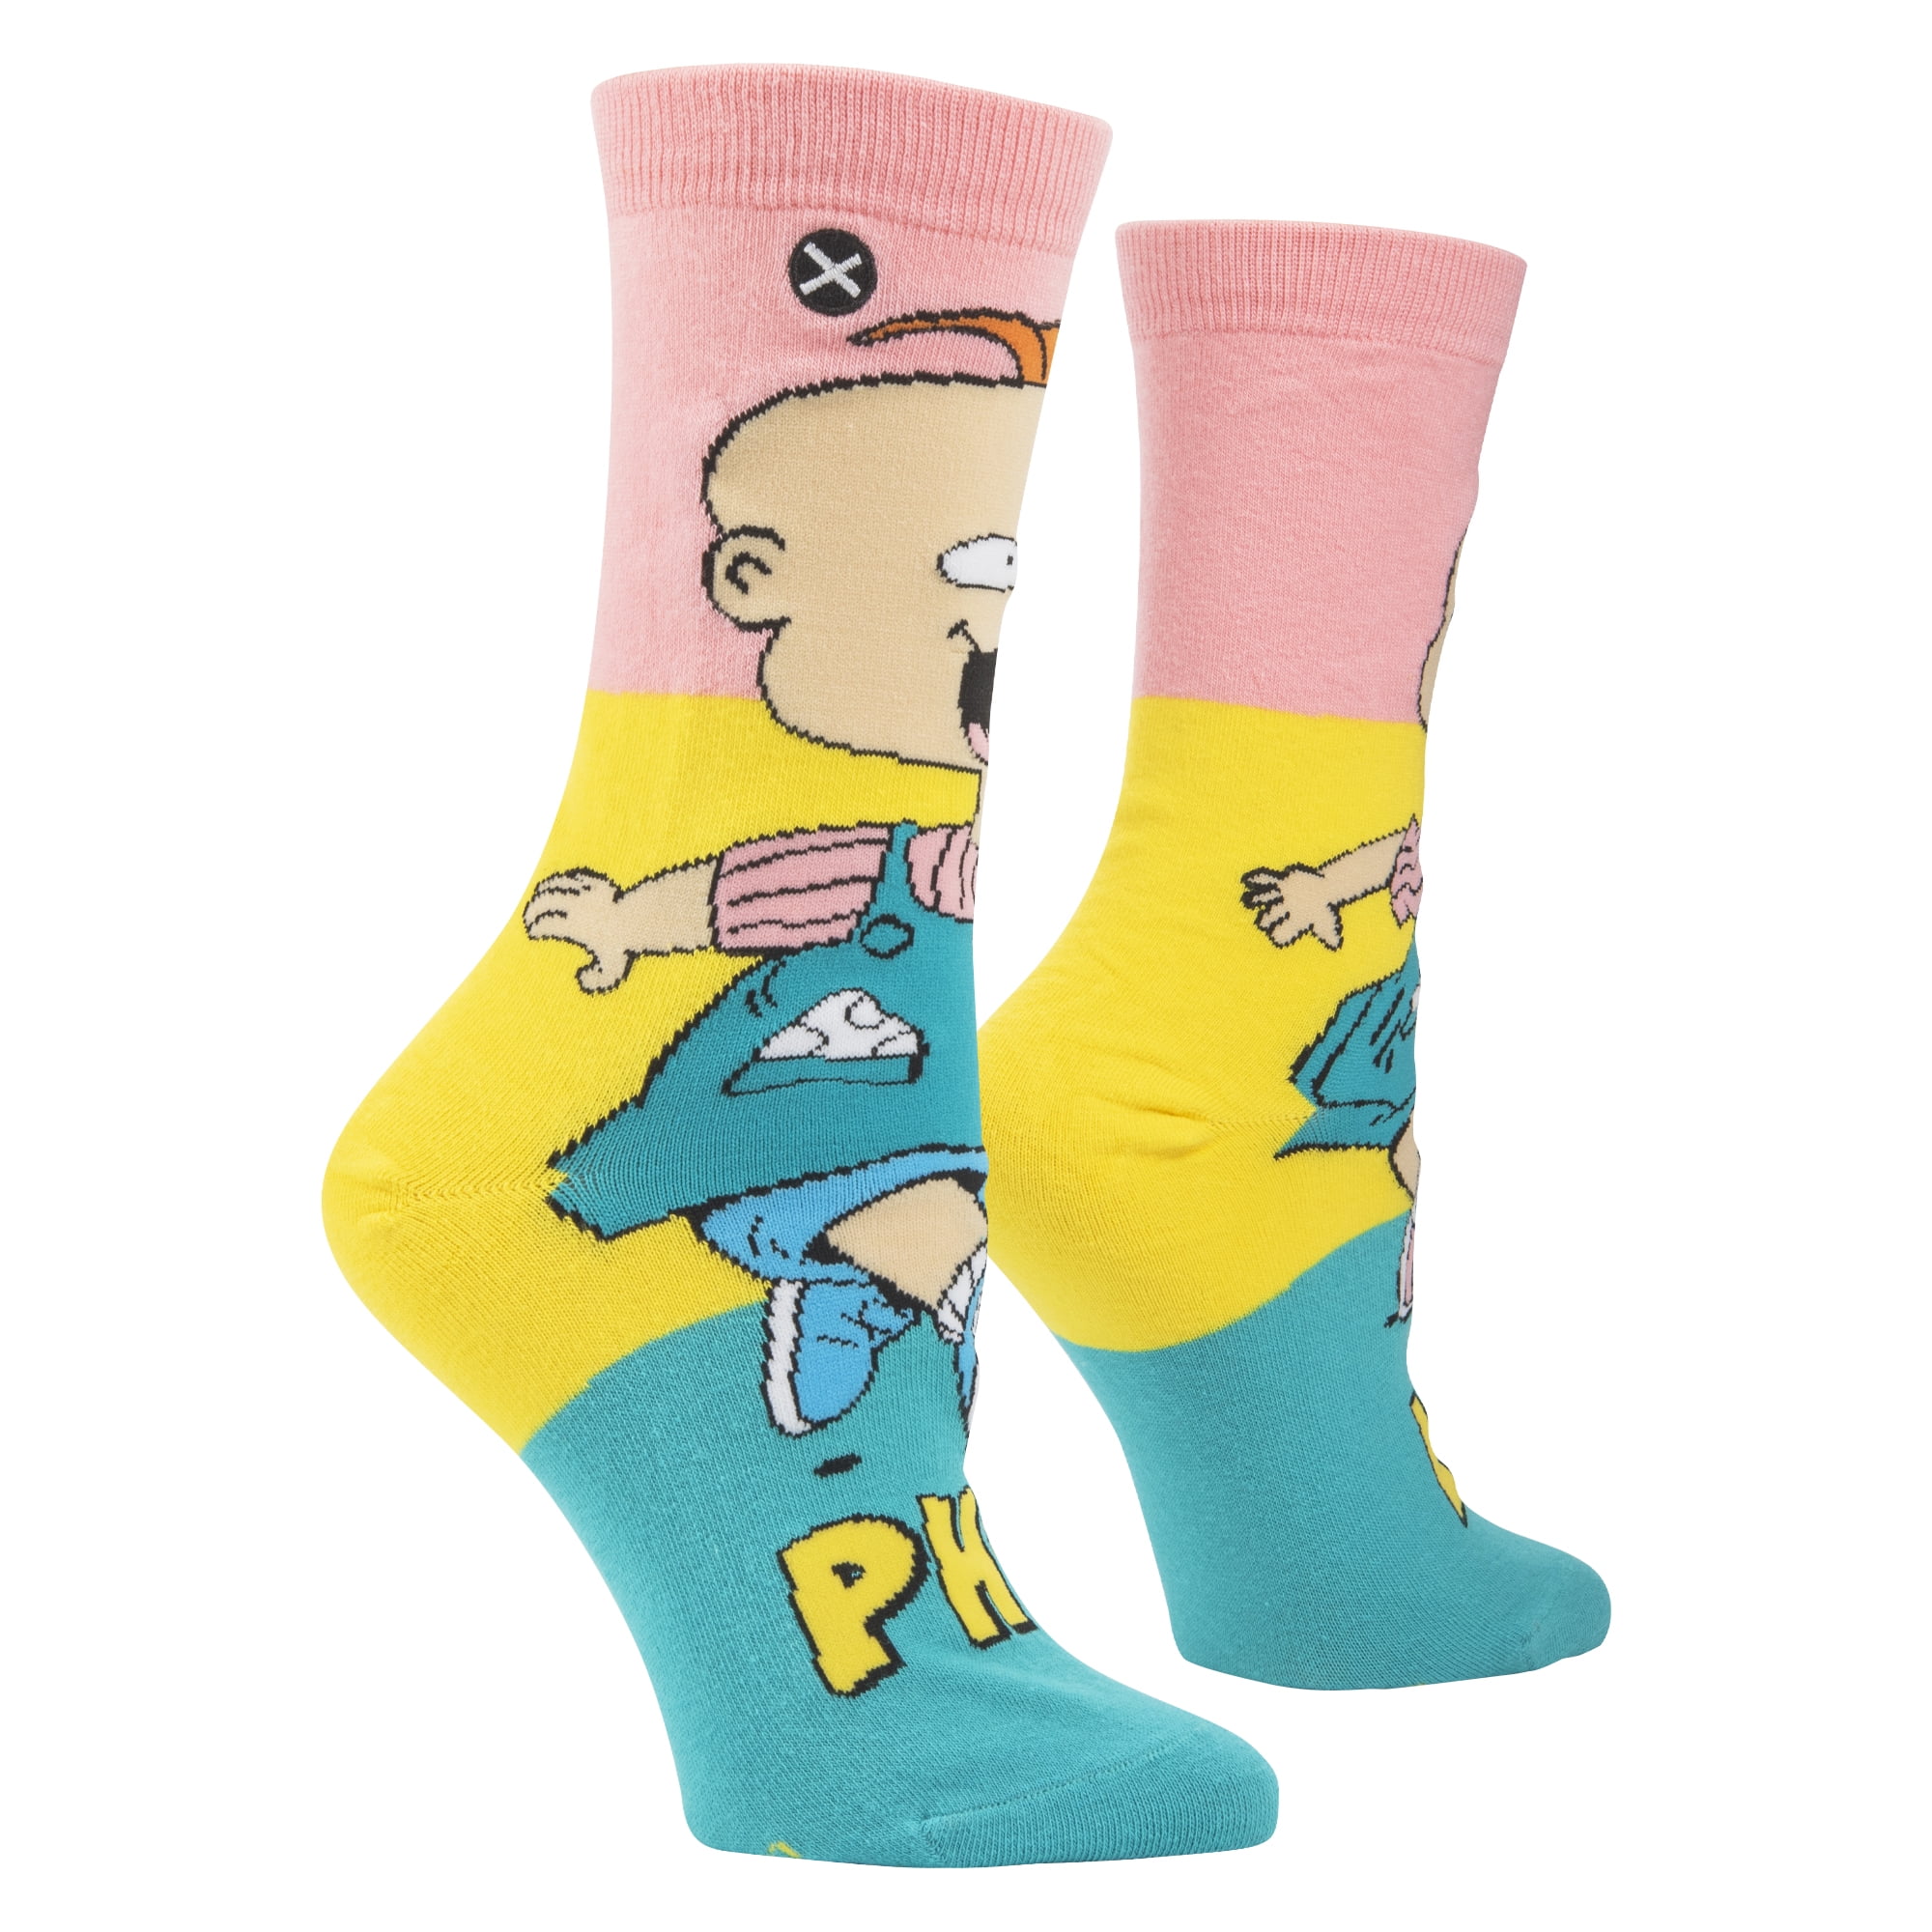 Odd Sox, Nick Stickers Women's Cartoon Socks